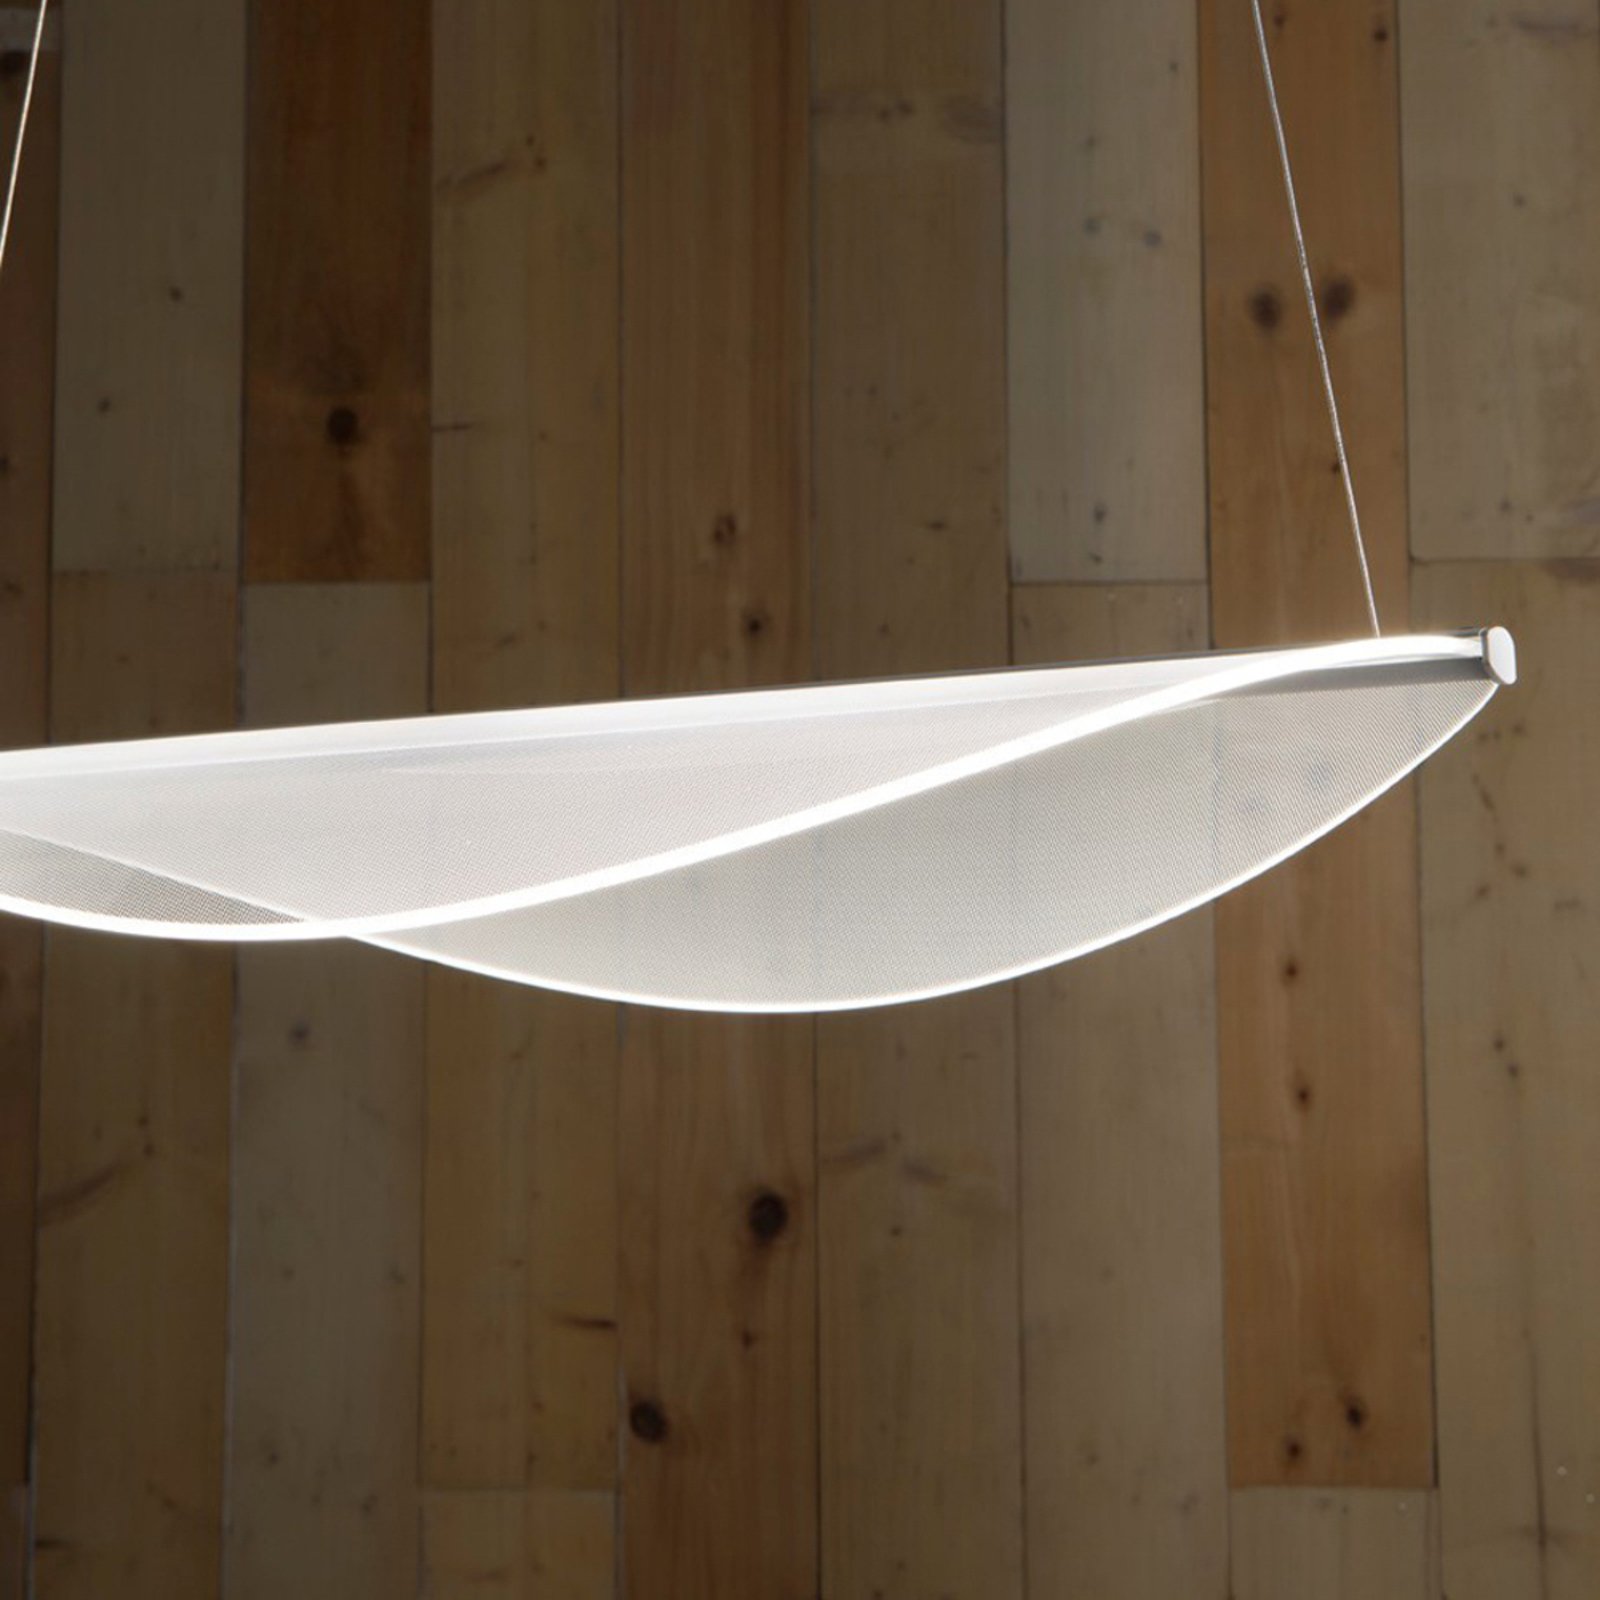 Stilnovo Diphy LED hanging light, 1-bulb, Phase, 54 cm